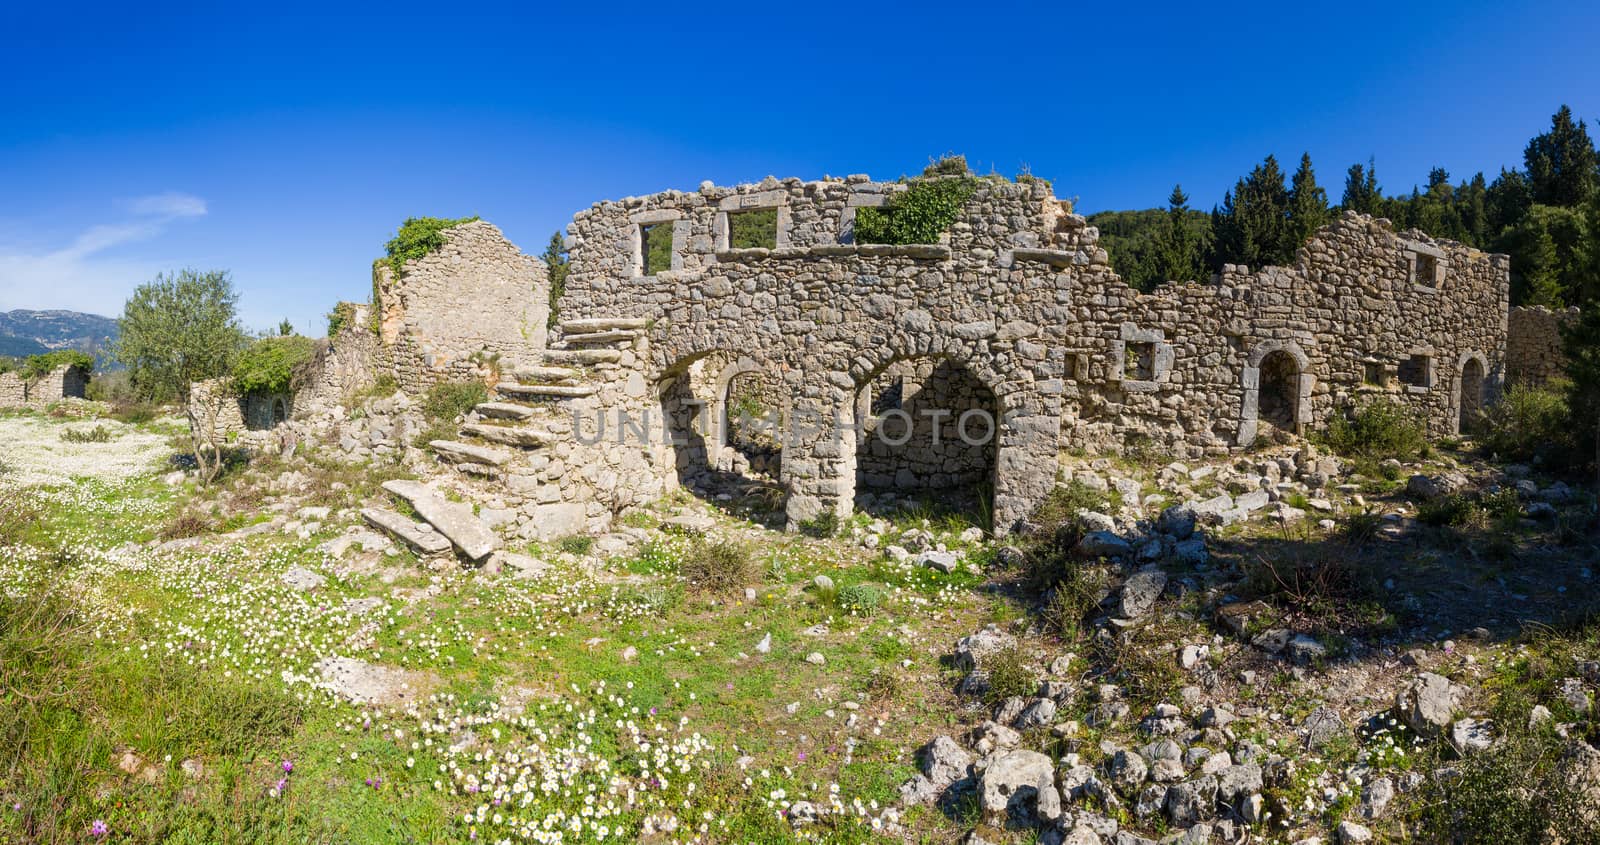 The castle of Lefkada  by Netfalls